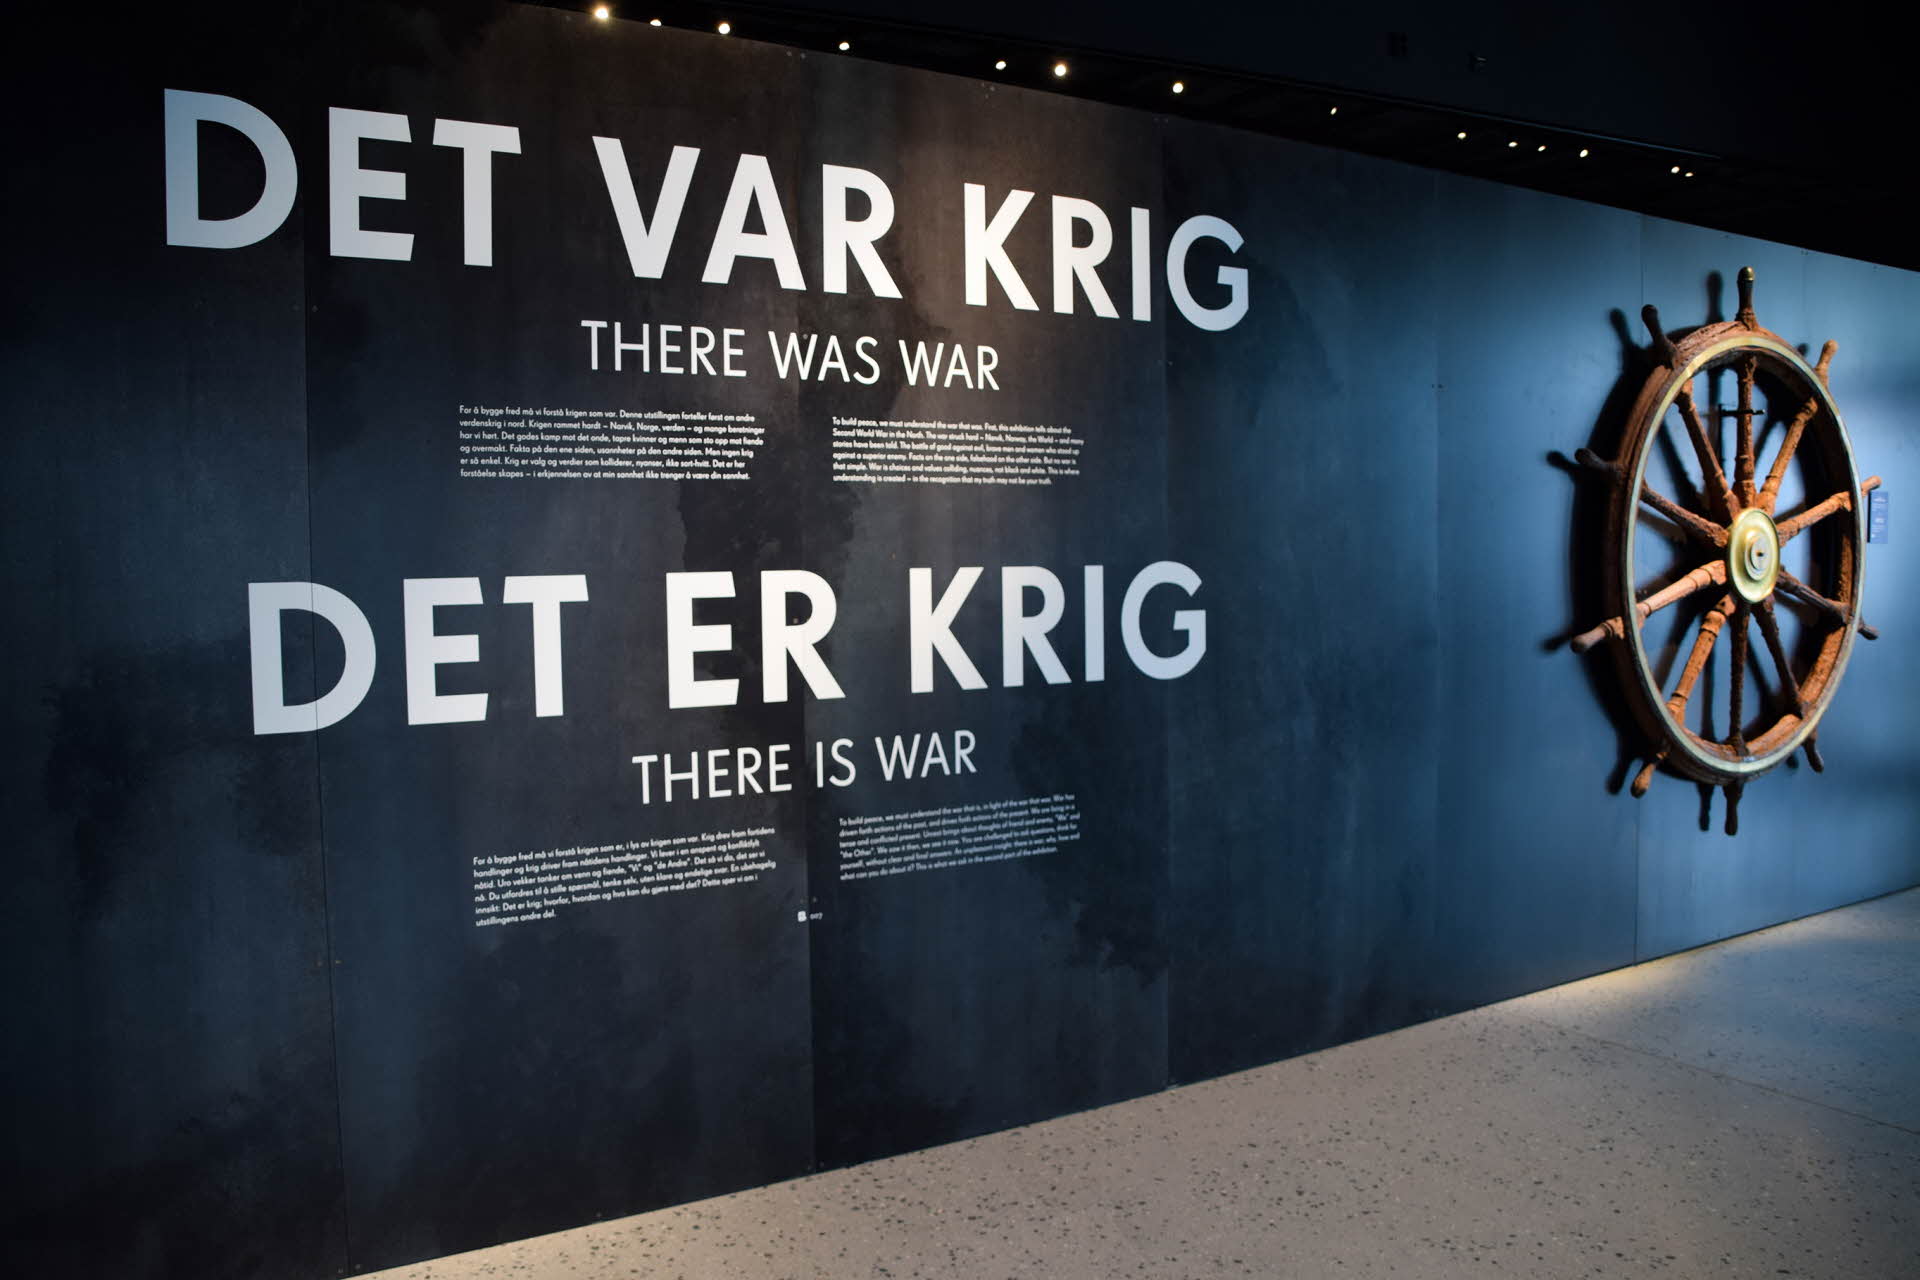 ナルヴィク戦争博物館の館内、戦争と操舵輪について解説する展示ボード。